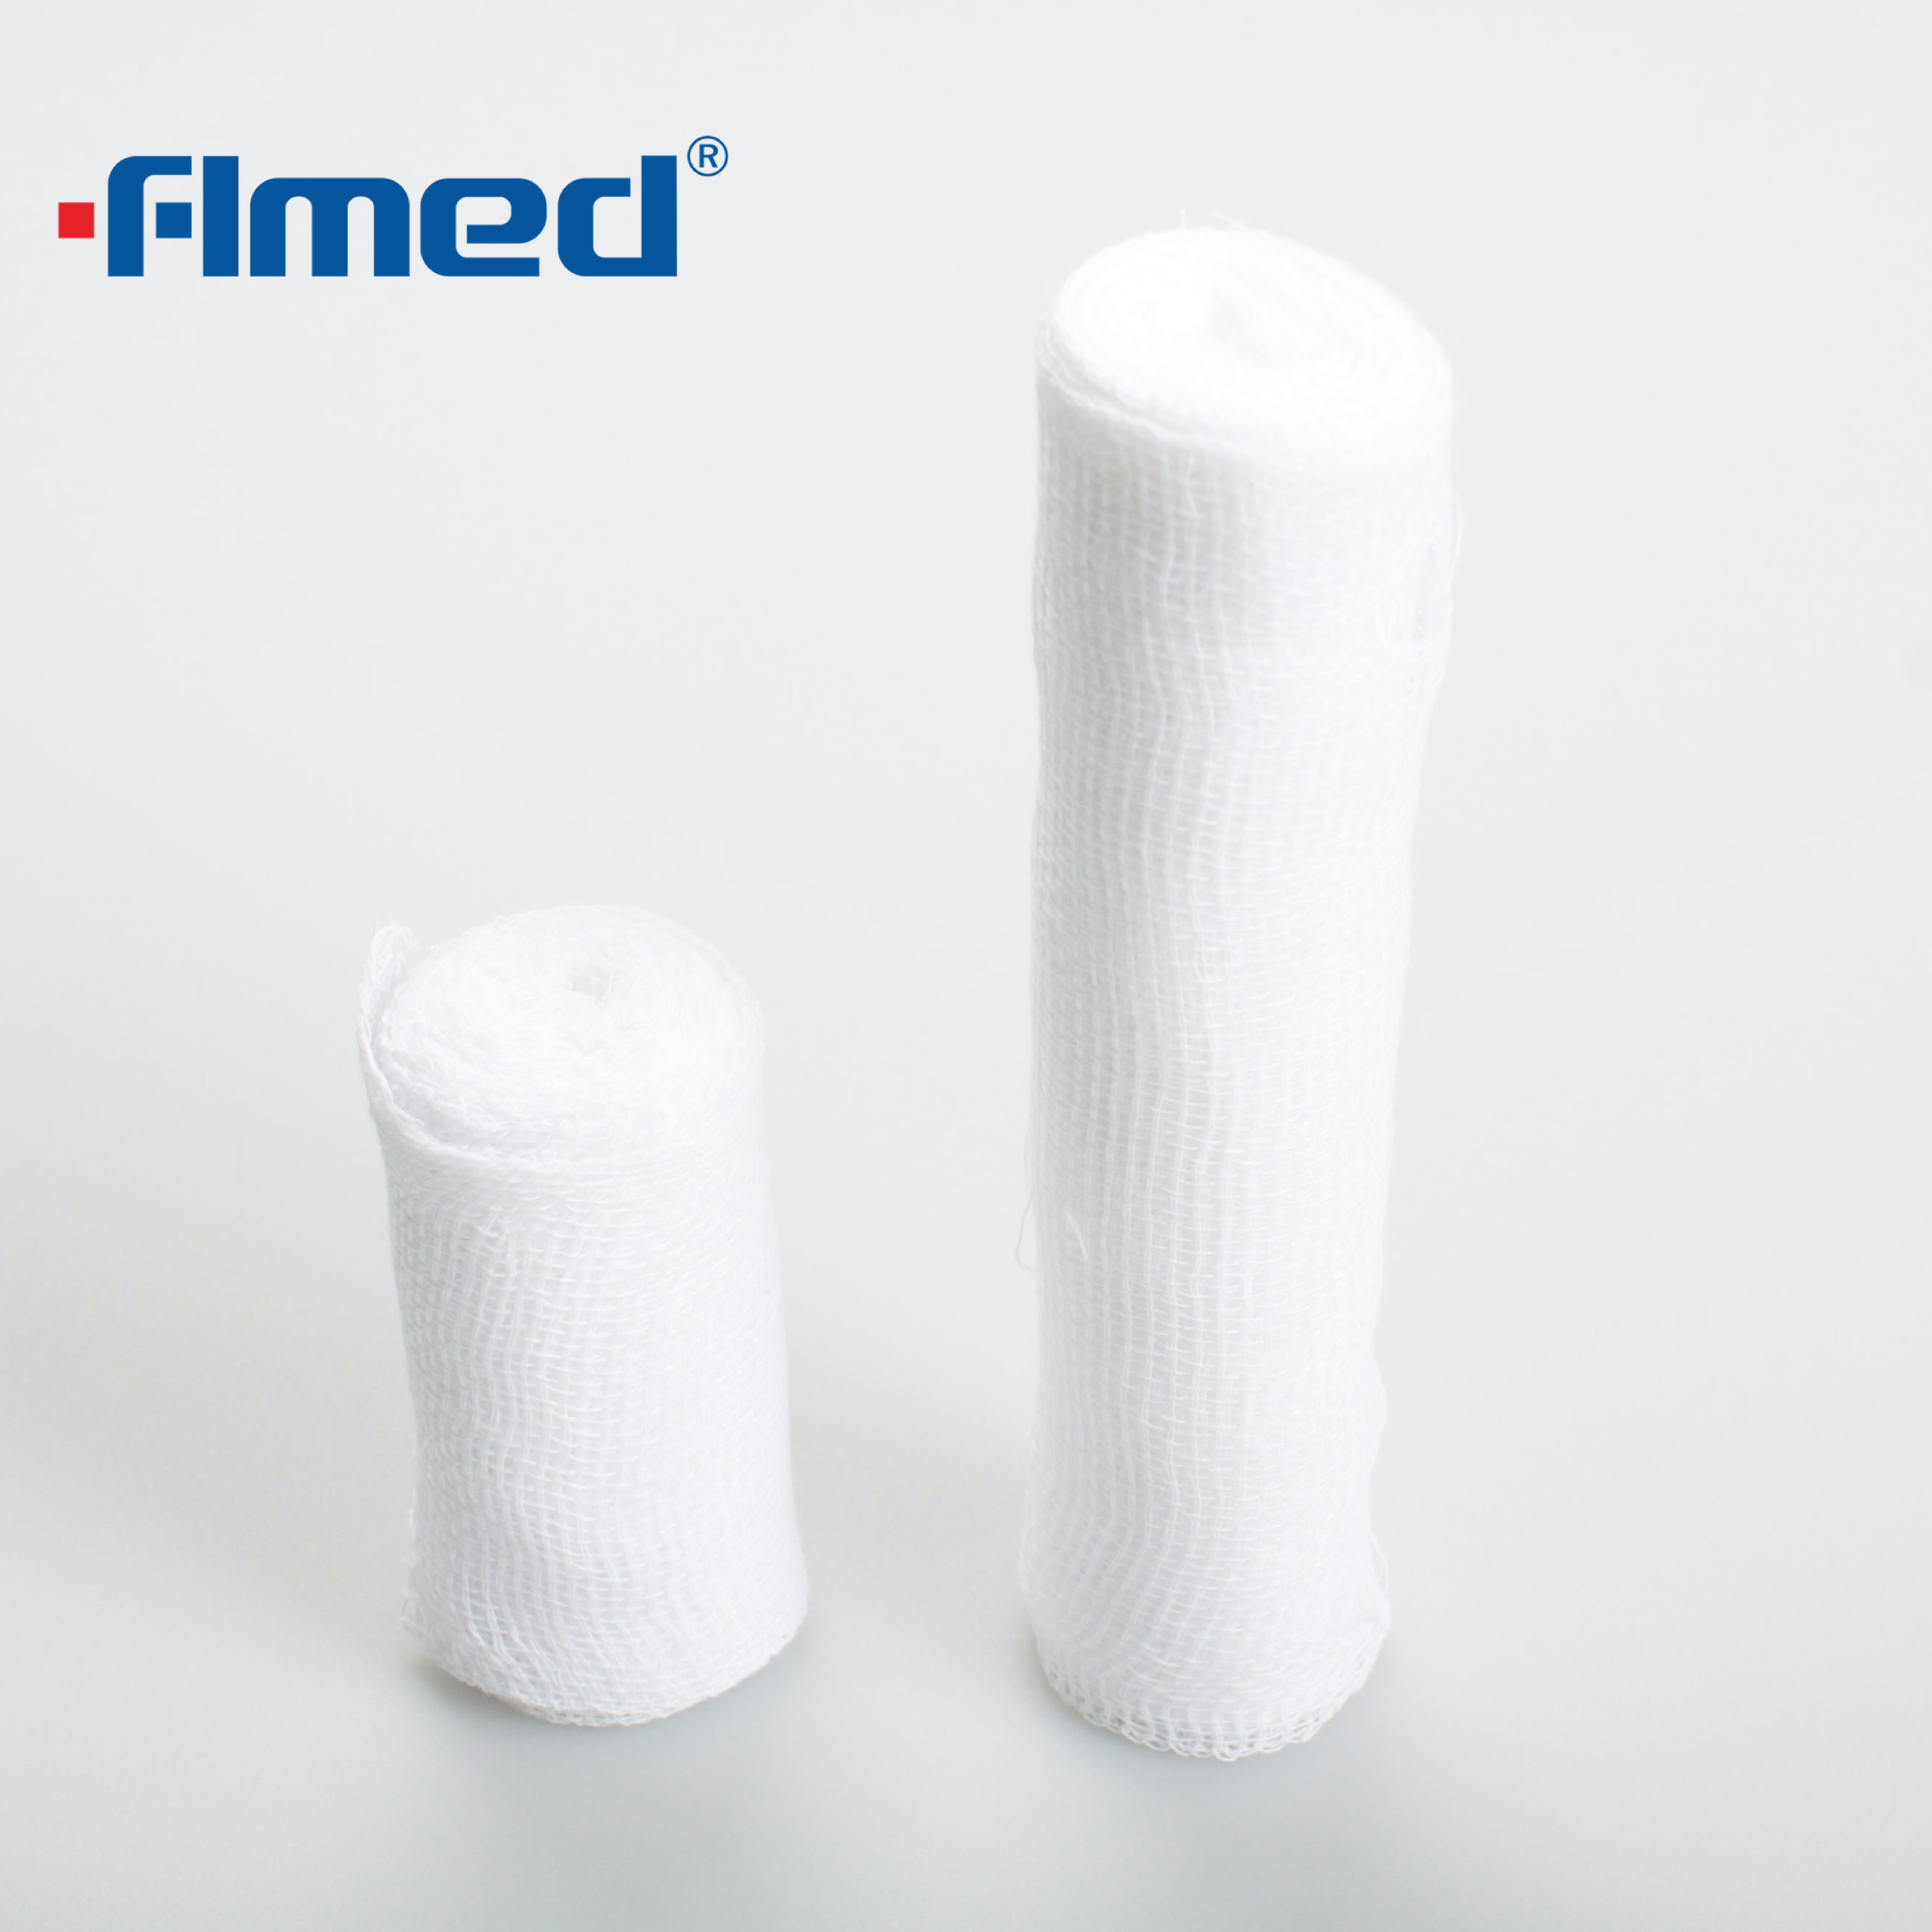 Elastik yumuşak profesyonel PBT elastik bandaj giyinmek ve sabitlemek için kullanılır